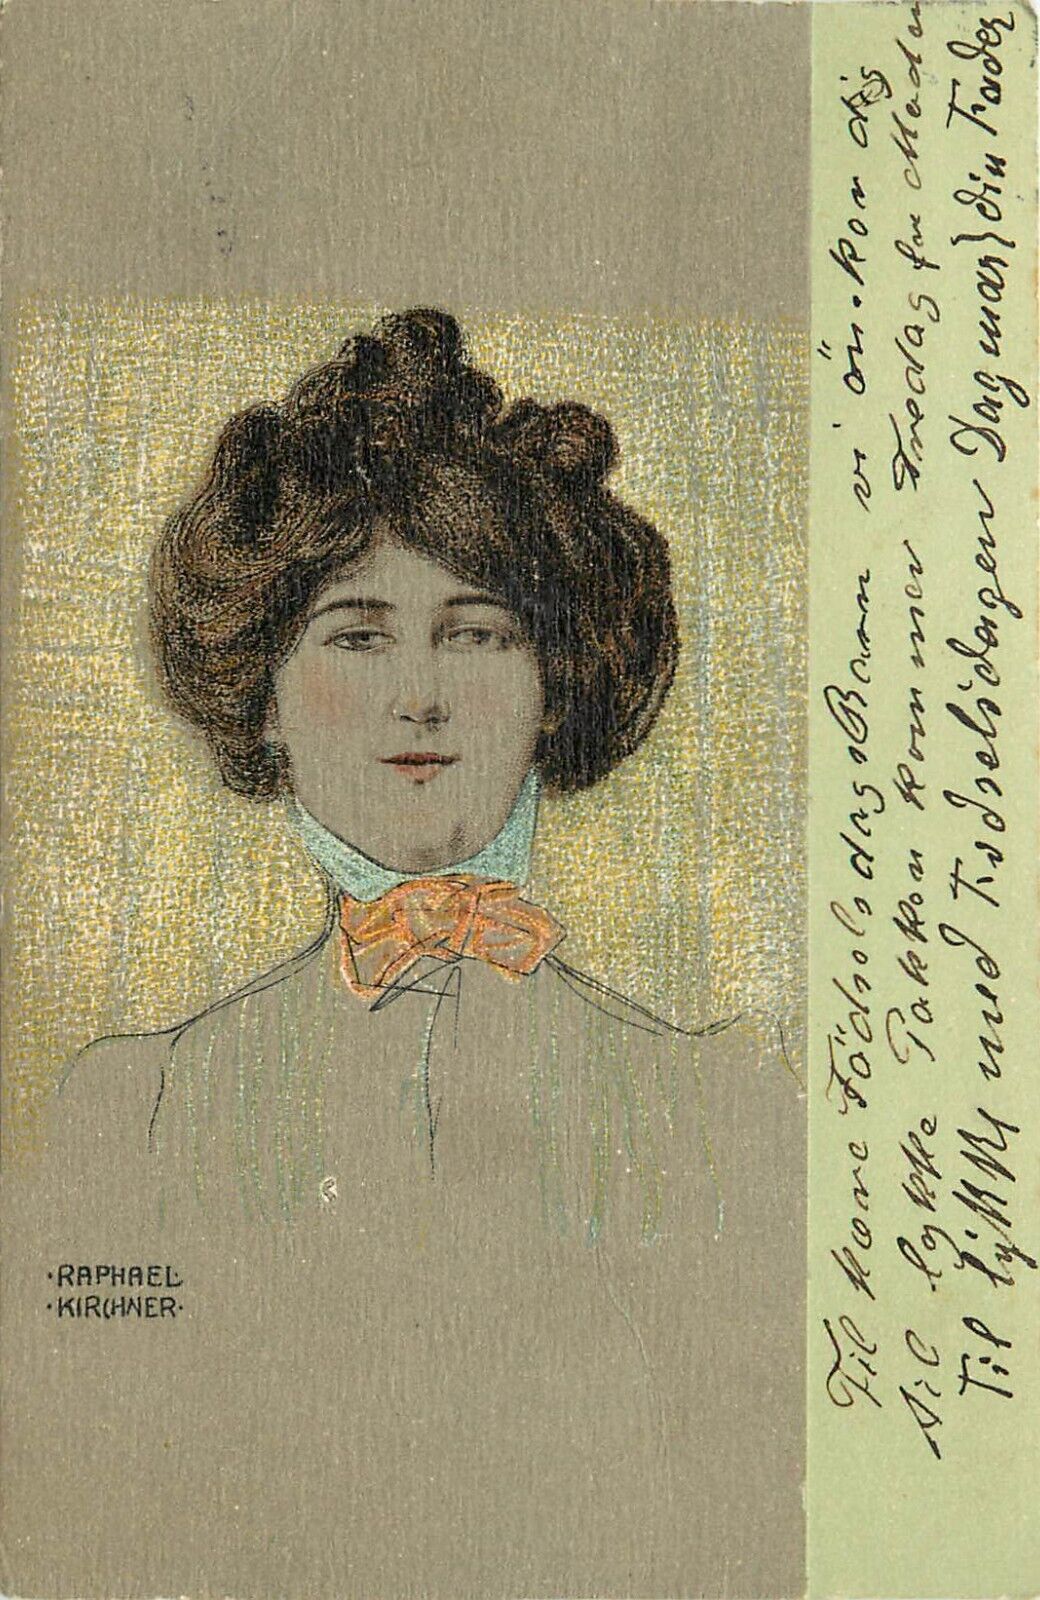 Raphael Kirchner Art Postcard Beautiful Brunette Woman w/ Hair Up & Bow Collar